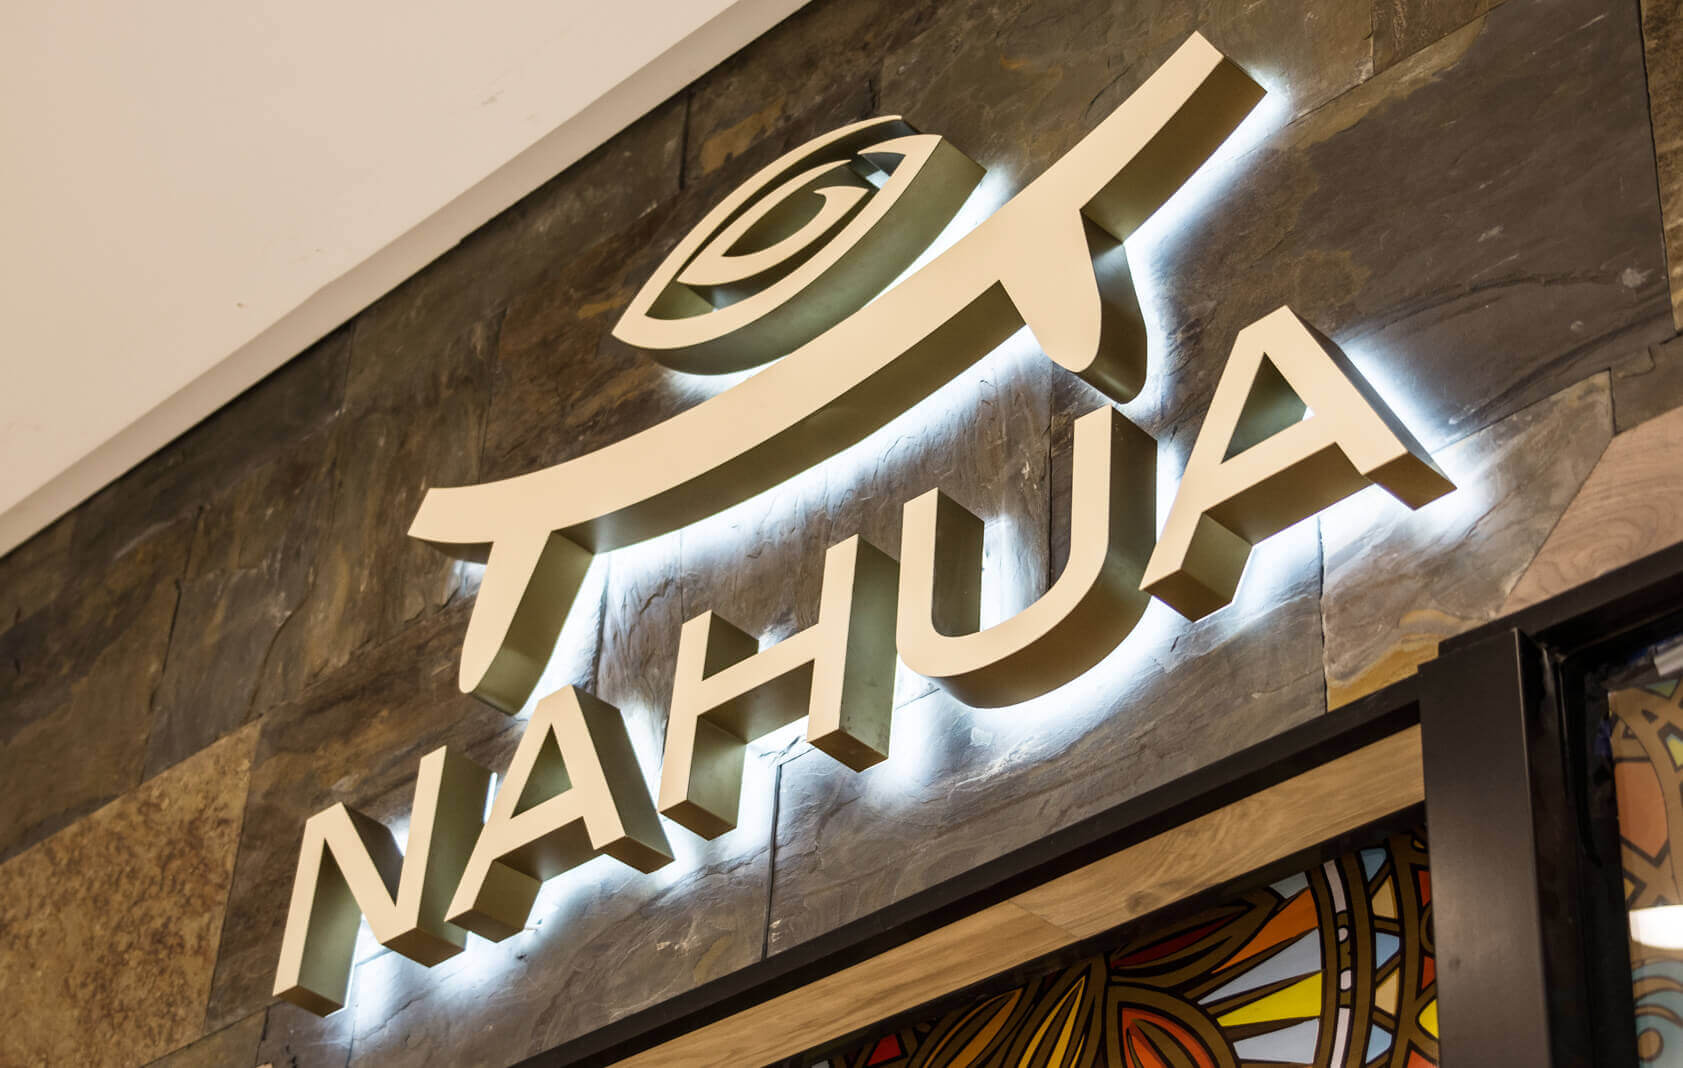 NAHUA - Nahua - lettere luminose a LED poste sul muro, effetto alone visibile